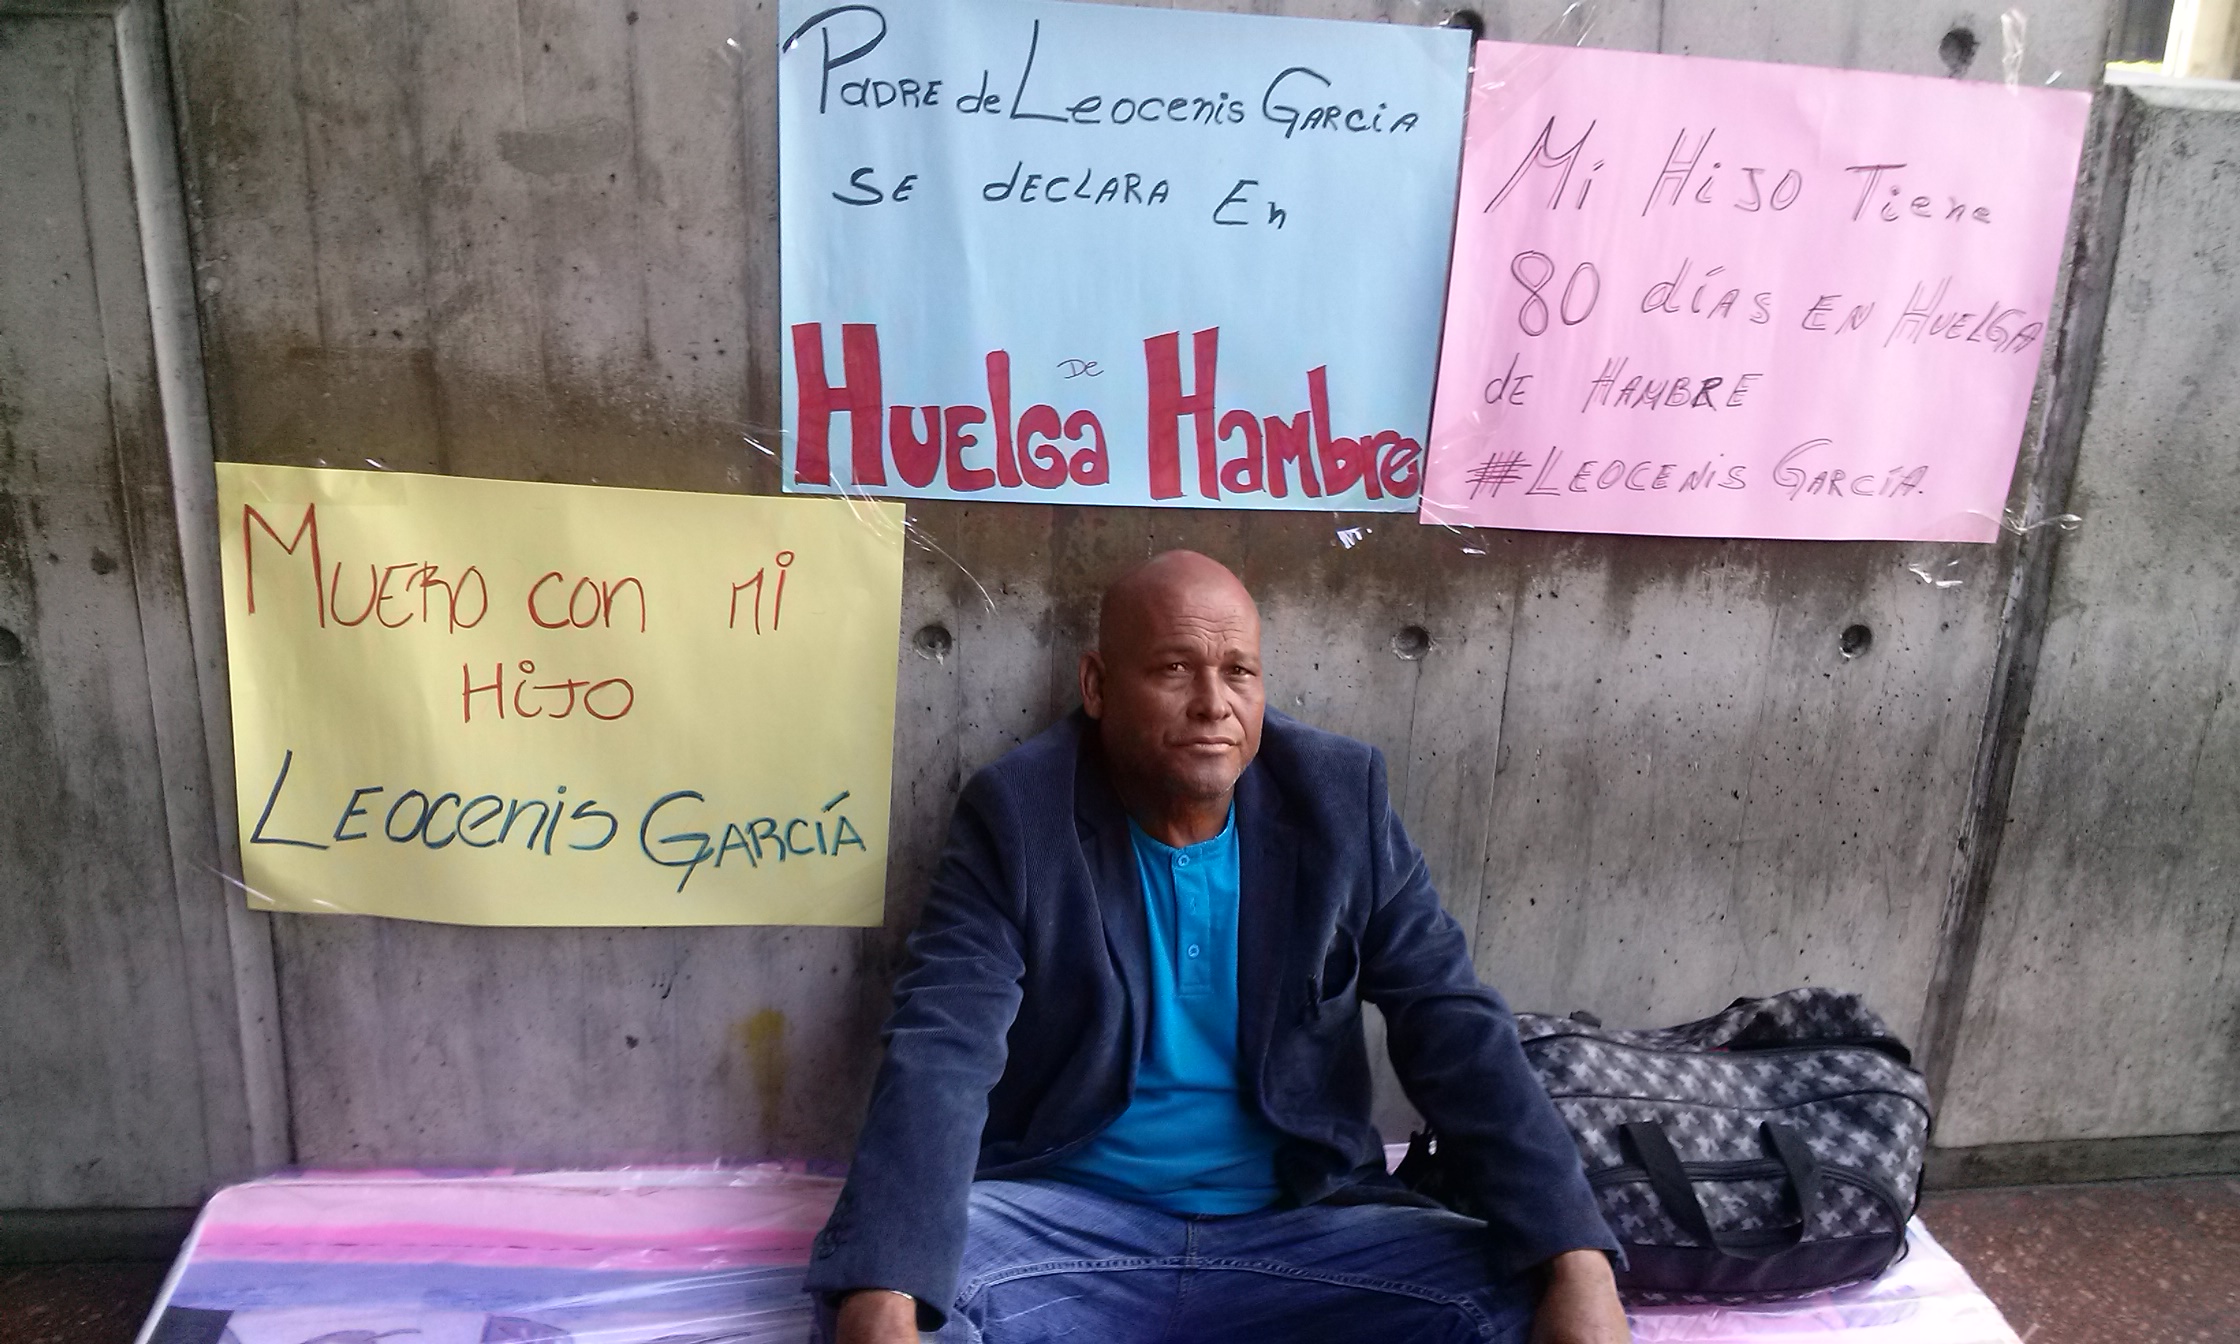 Padre de Leocenis García se declara en Huelga (Fotos)